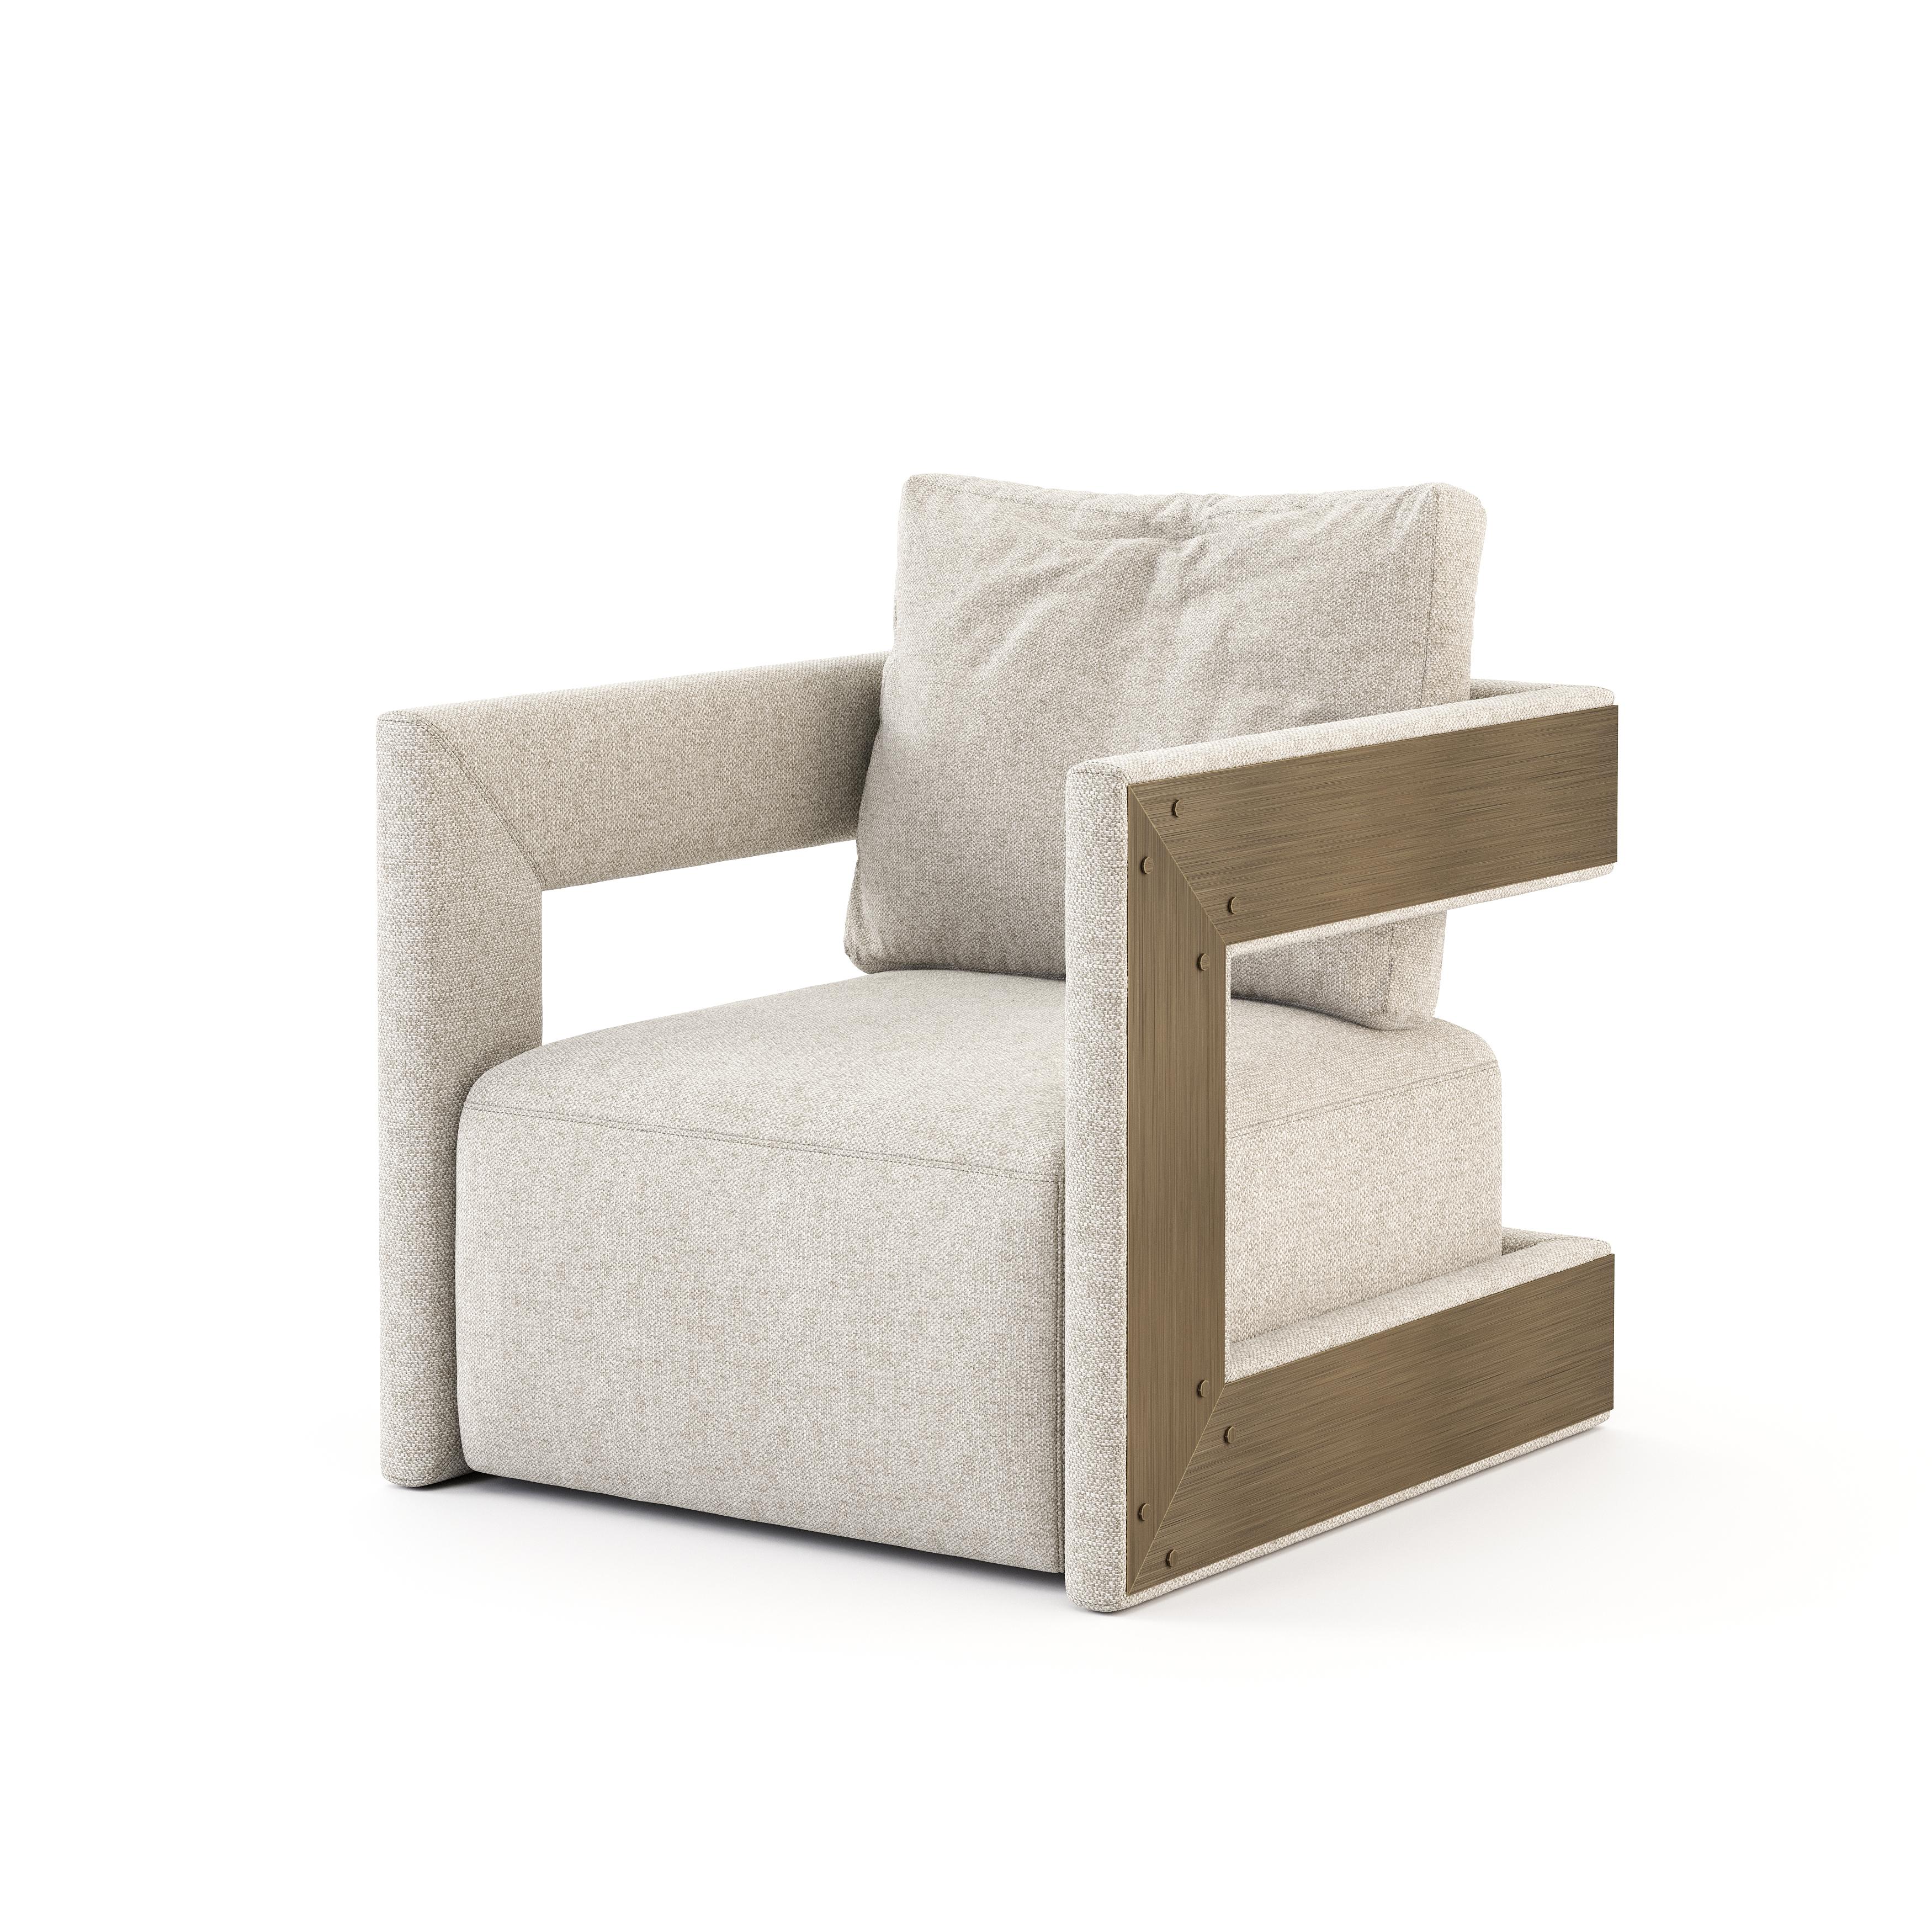 Mit seinem modernen, geradlinigen Design verleiht dieser Sessel dem Raum Status und Persönlichkeit. Die matten Holzdetails an den Seiten verleihen dem Möbelstück einen Hauch von Design und Eleganz. Ideal für Wohnzimmer, Büro oder